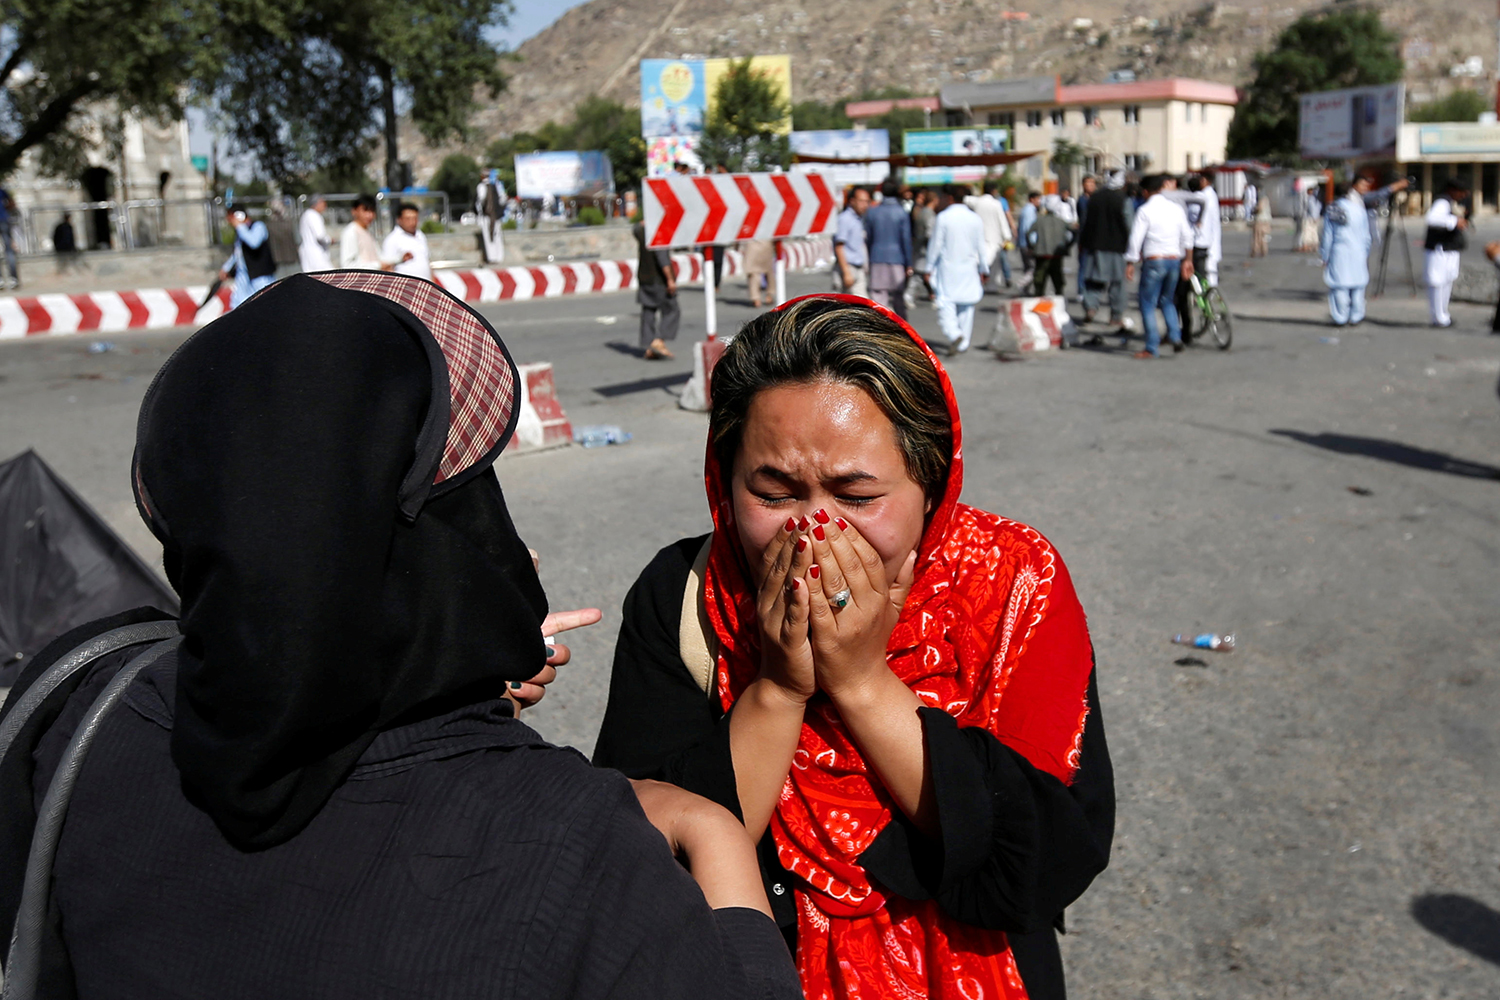 80 muertos y más de 200 heridos en un atentado suicida contra una manifestación en Kabul